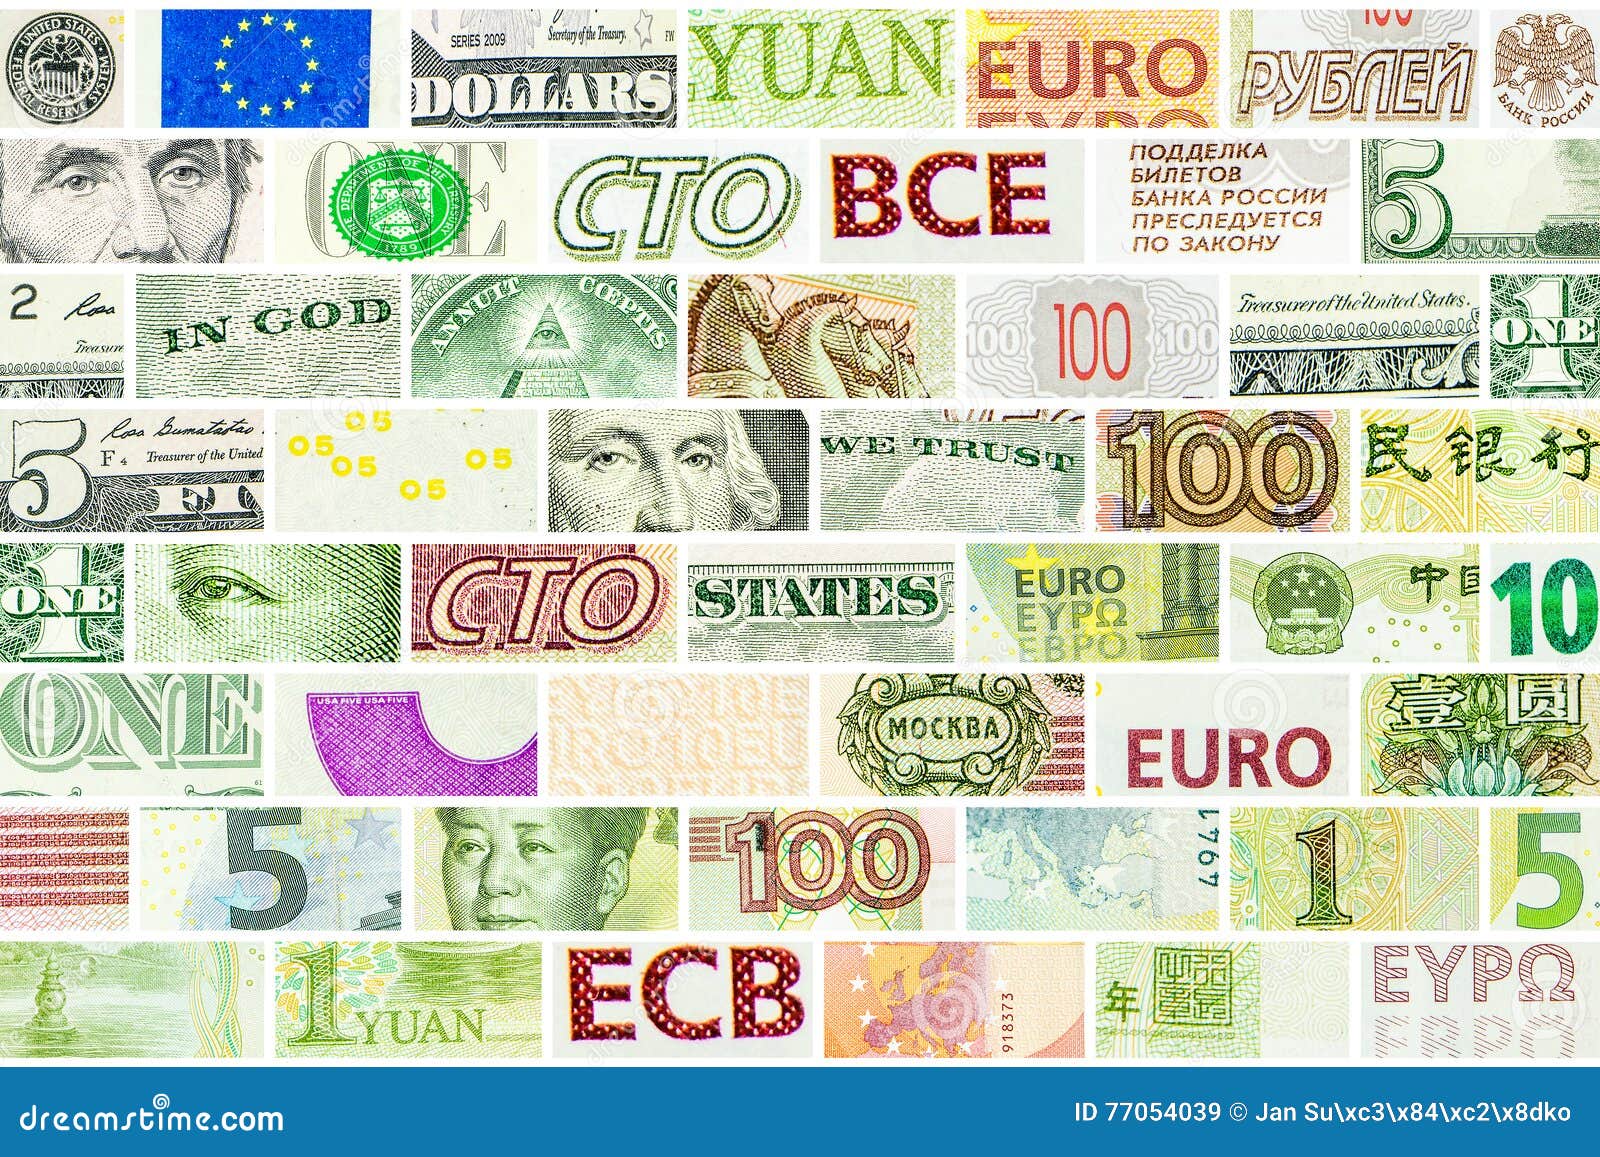 35 евро в рублях. Рисунок Мировых валют. Баннер валют. Валюта мира на л. Евро валюту на стене.